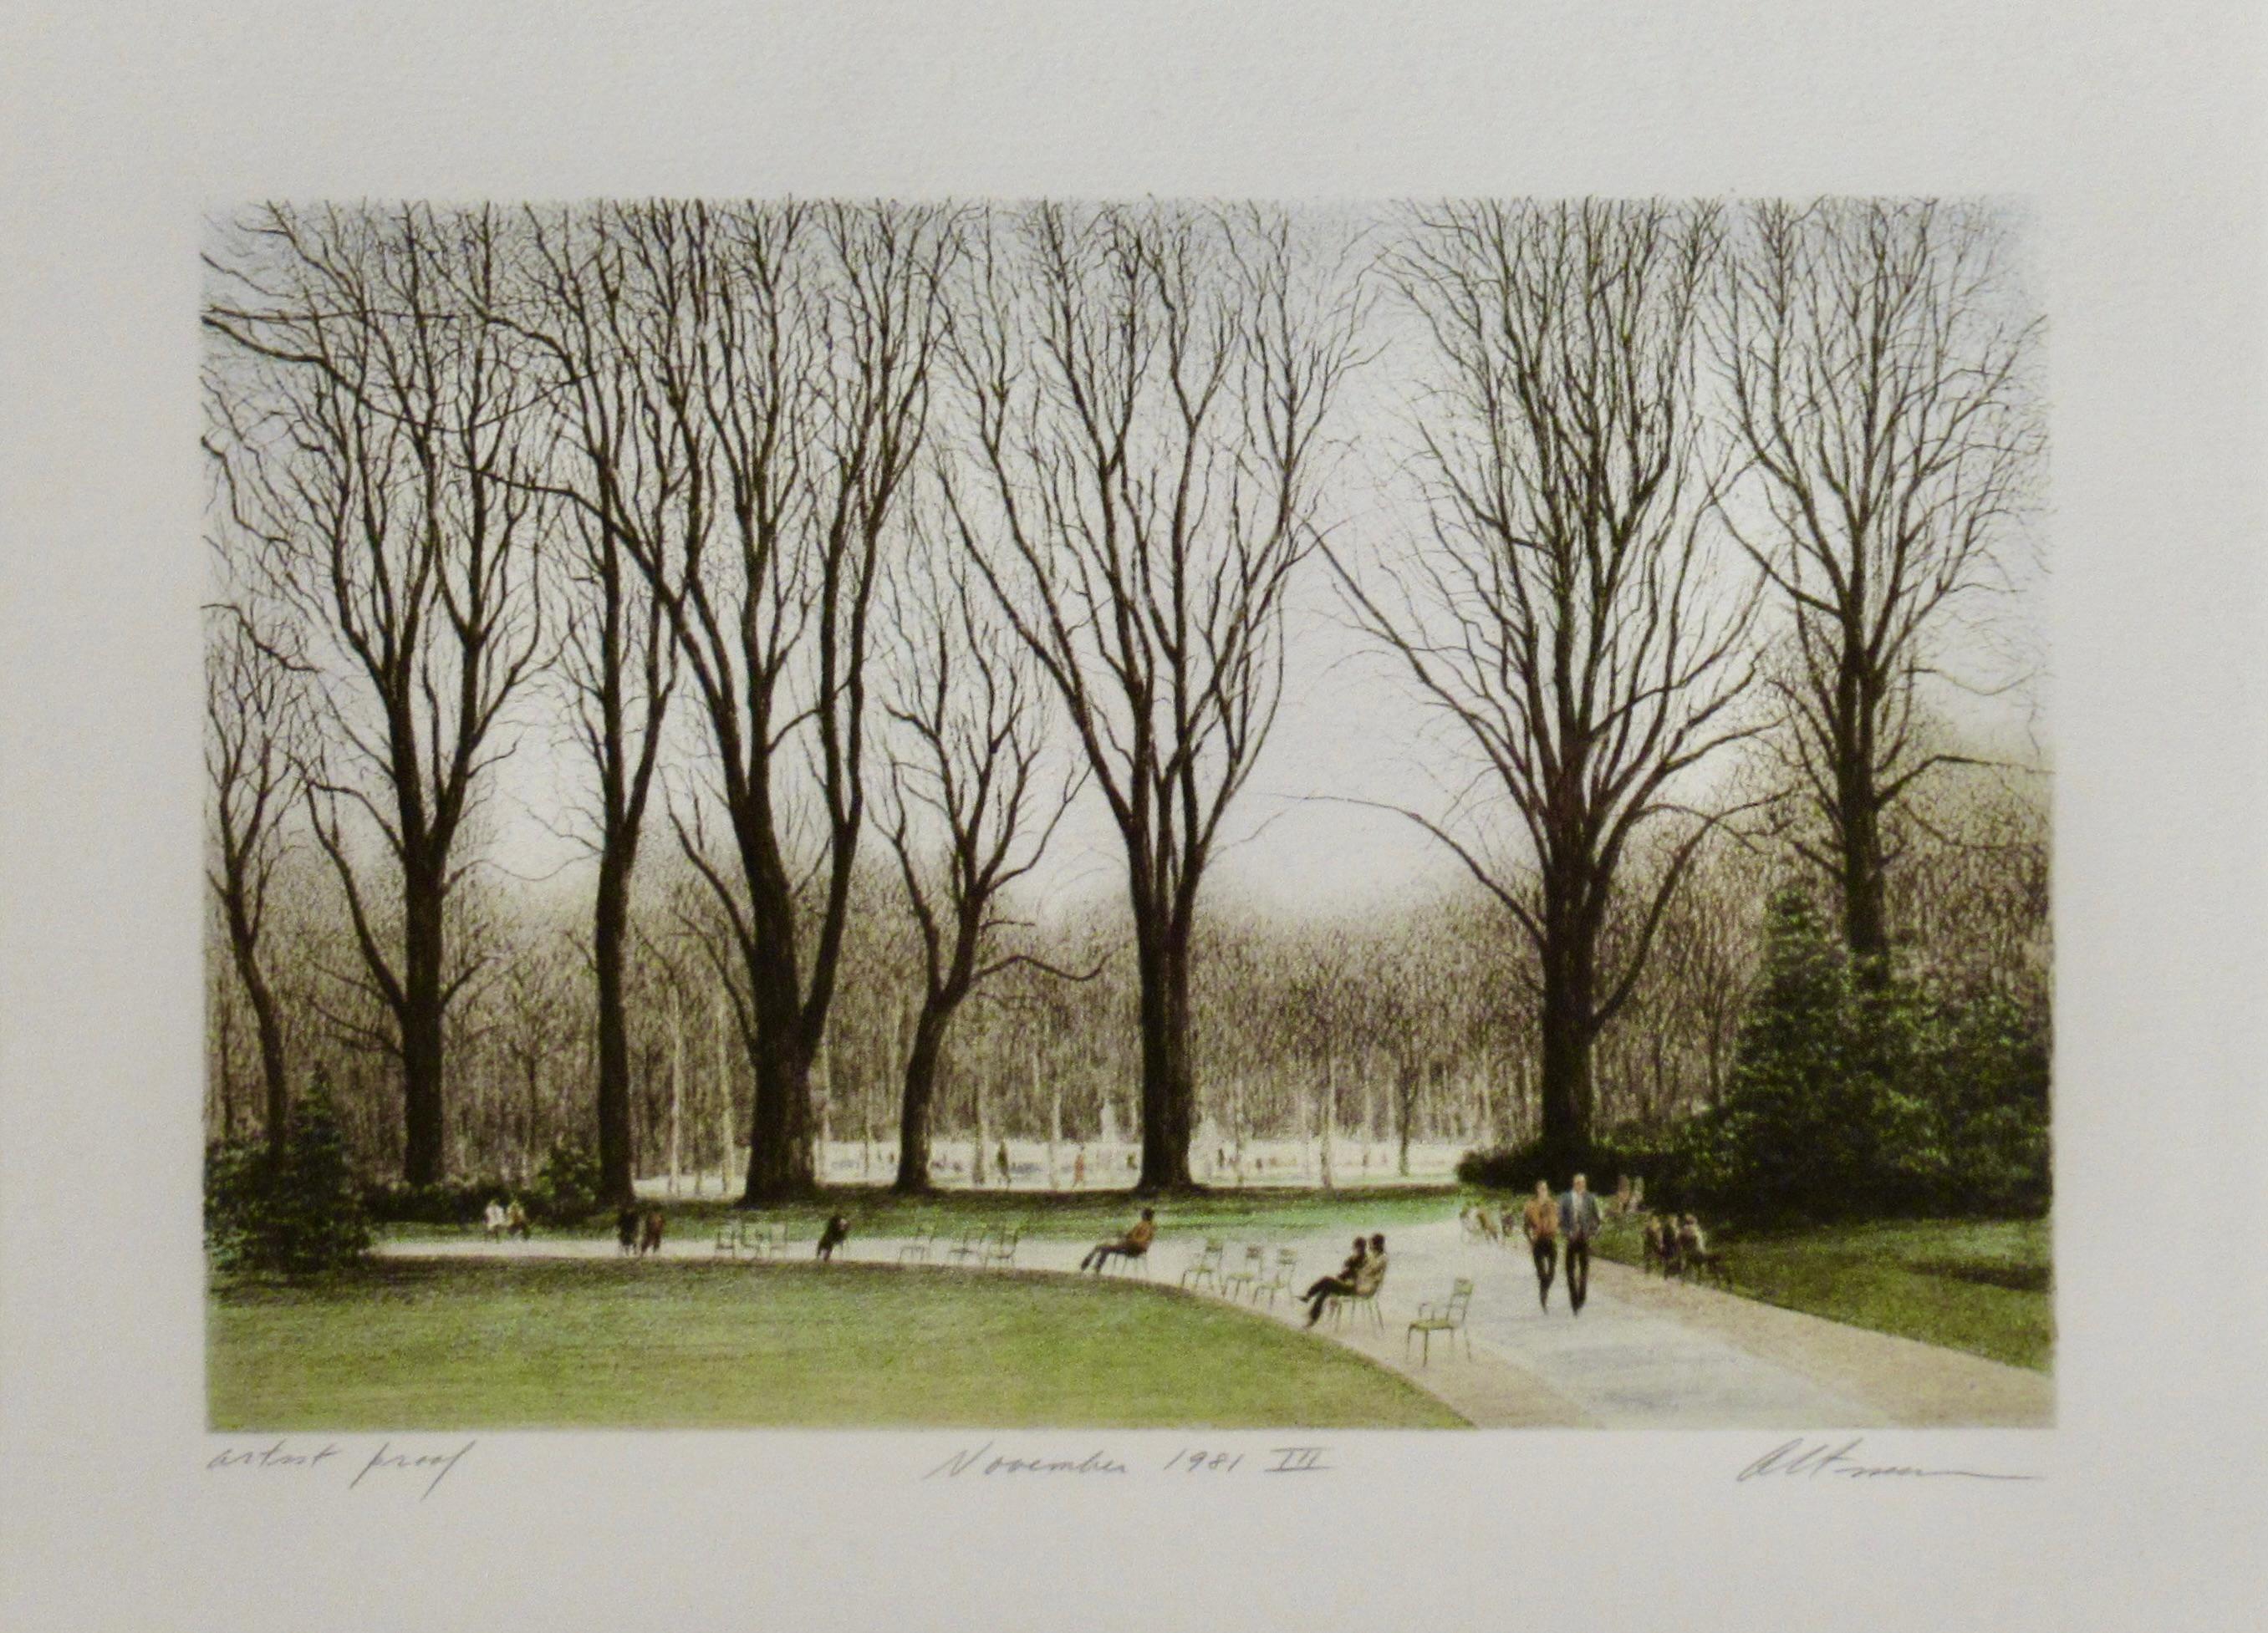 November 1981 III (Jardin du Luxembourg, Paris) - Print by Harold Altman